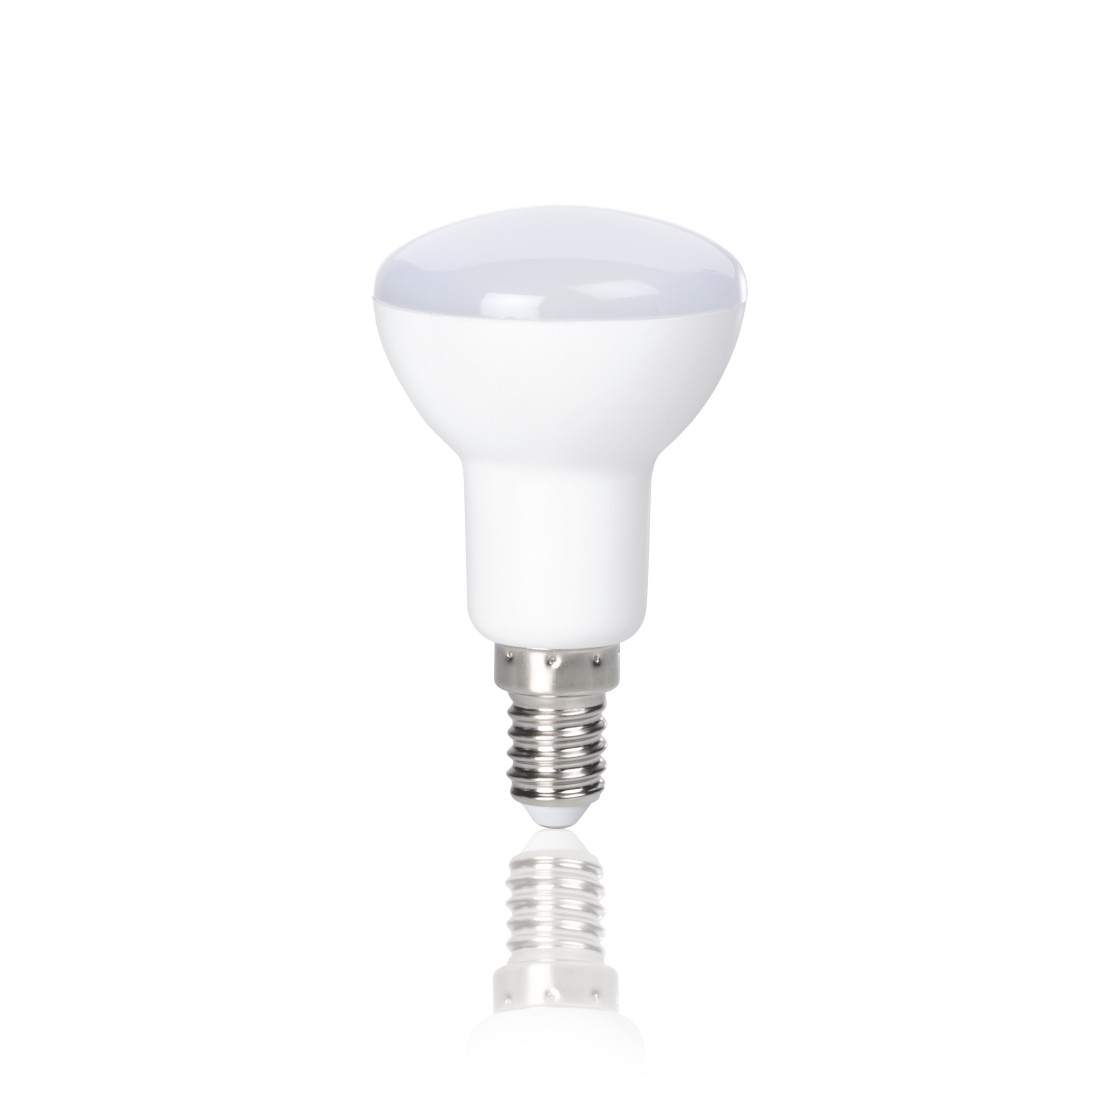 abx2 Druckfähige Abbildung 2 - Xavax, LED-Lampe, E14, 400lm ersetzt 35W, Reflektorlampe R50, Warmweiß, 2 Stück